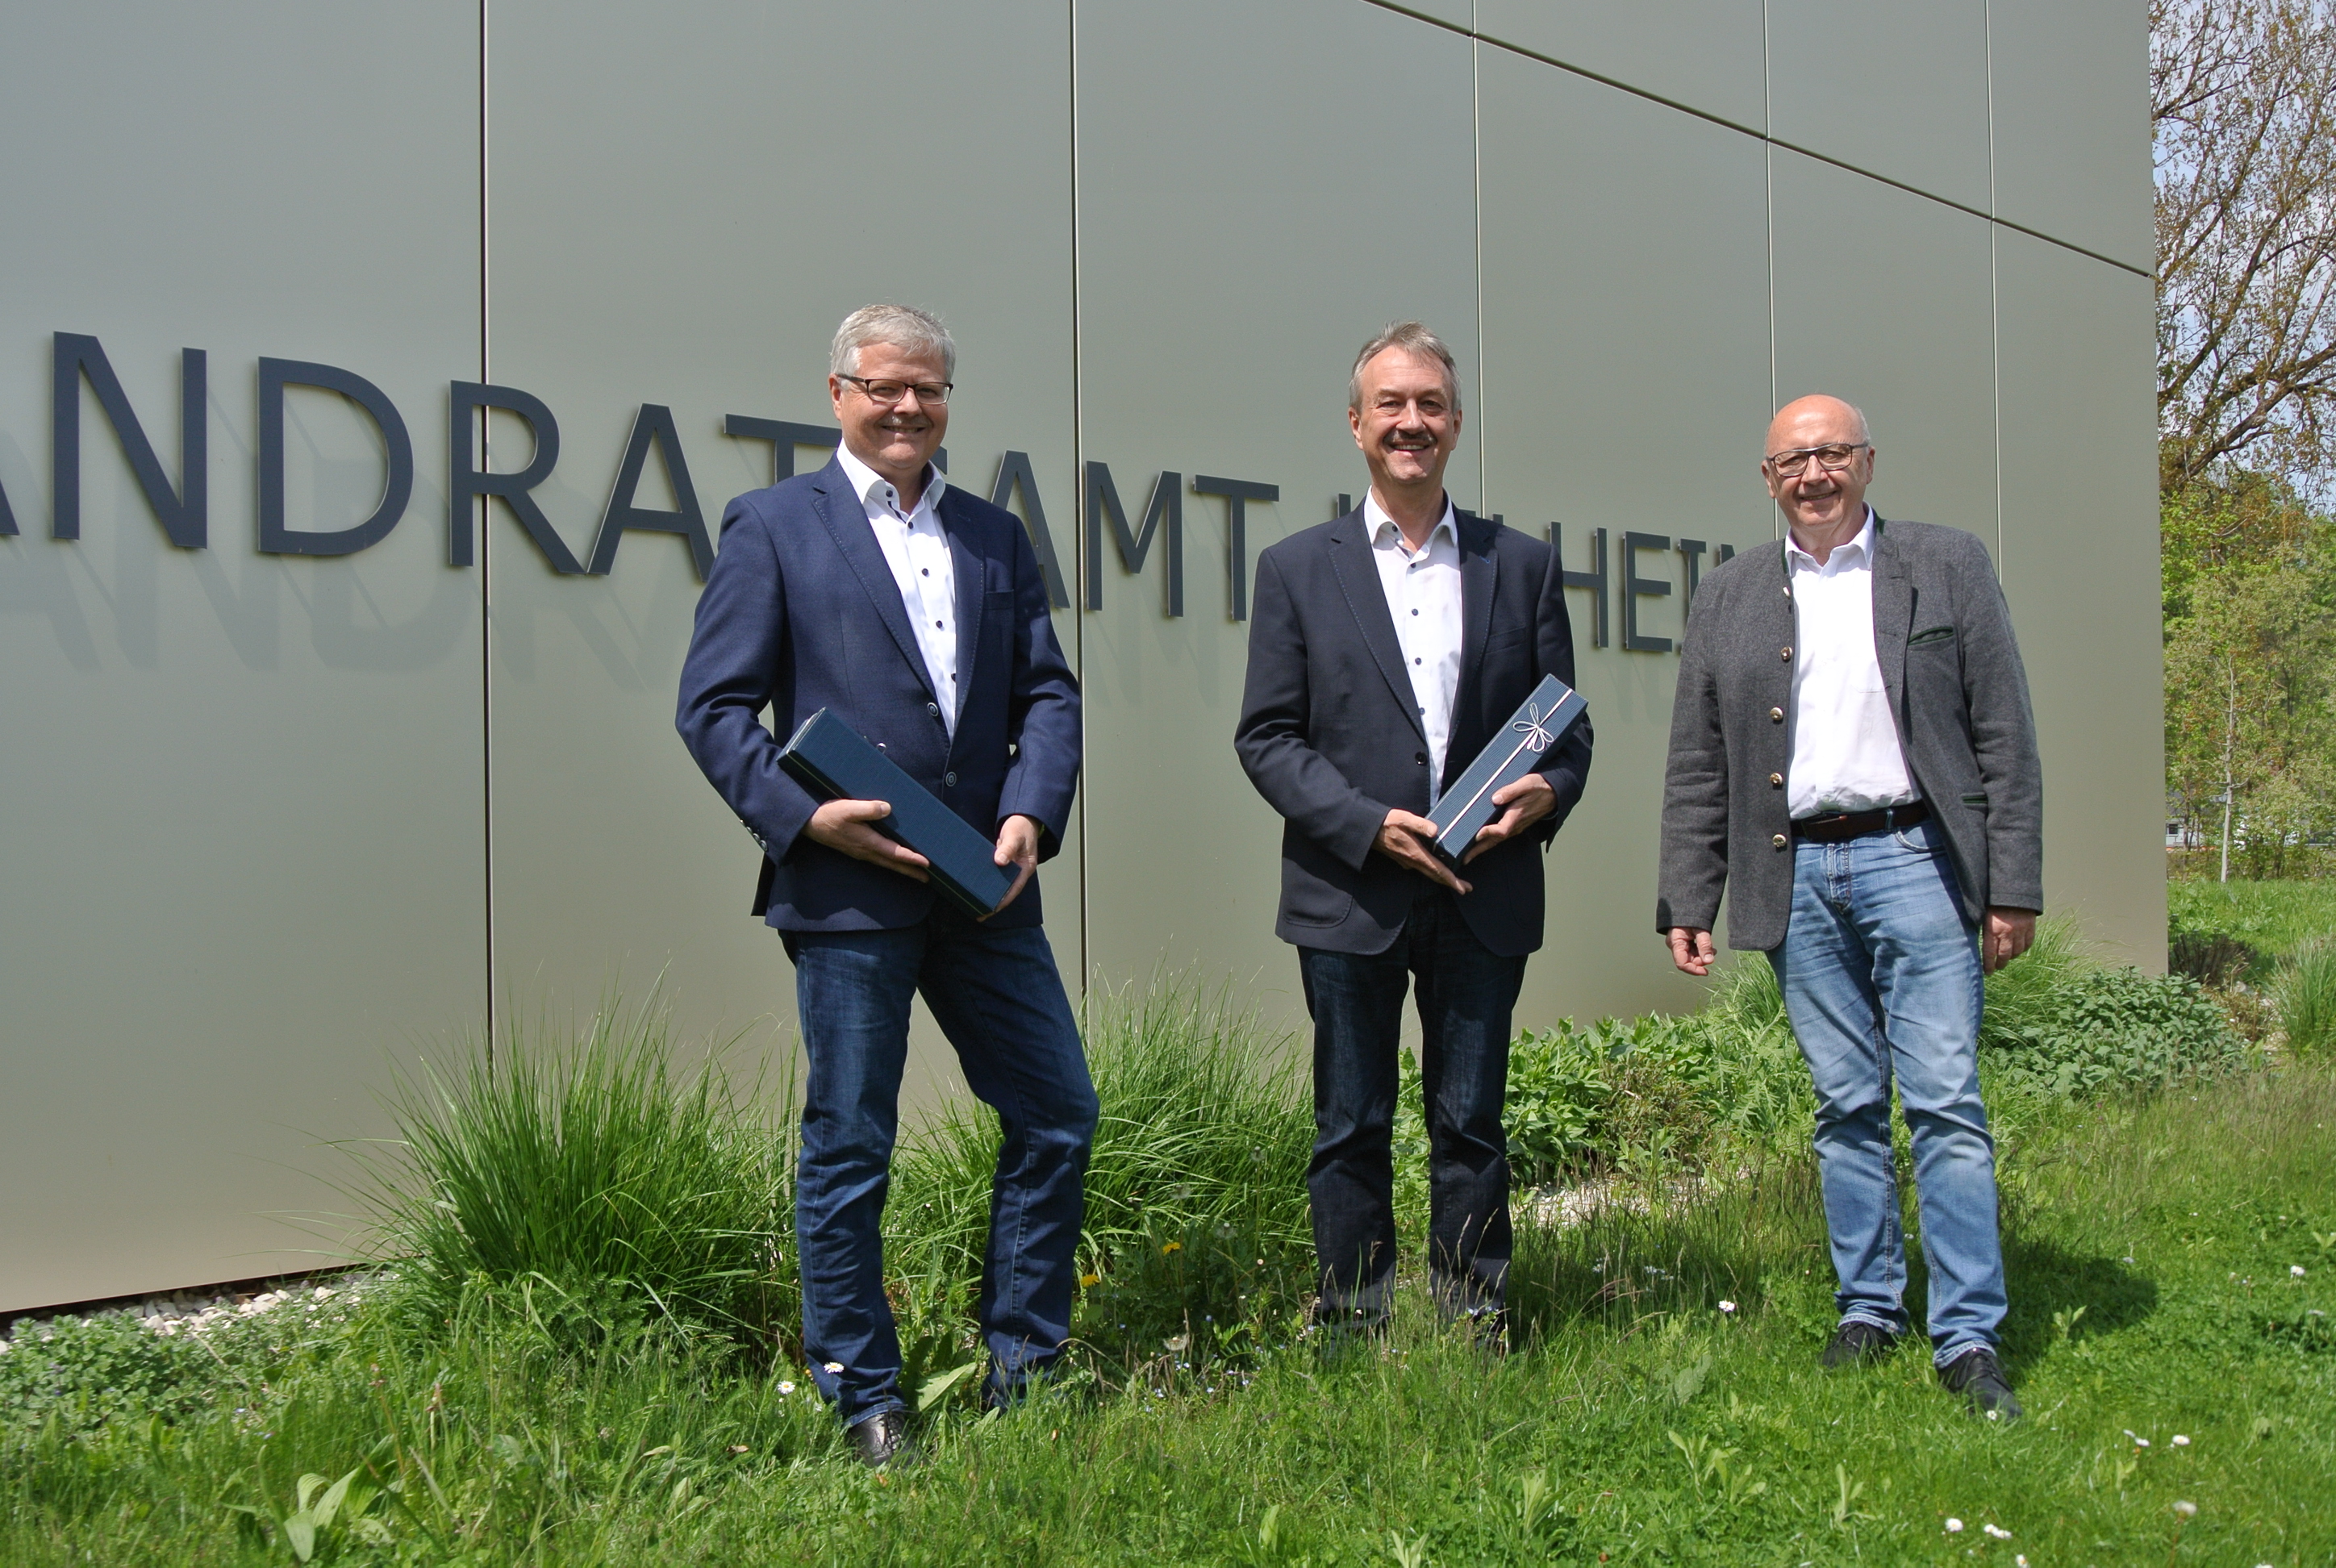 Landrat Martin Neumeyer gratuliert 1. Bürgermeister Herbert Blascheck und 1. Bürgermeister Gerhard Zeitler zum 20jährigen Dienstjubiläum